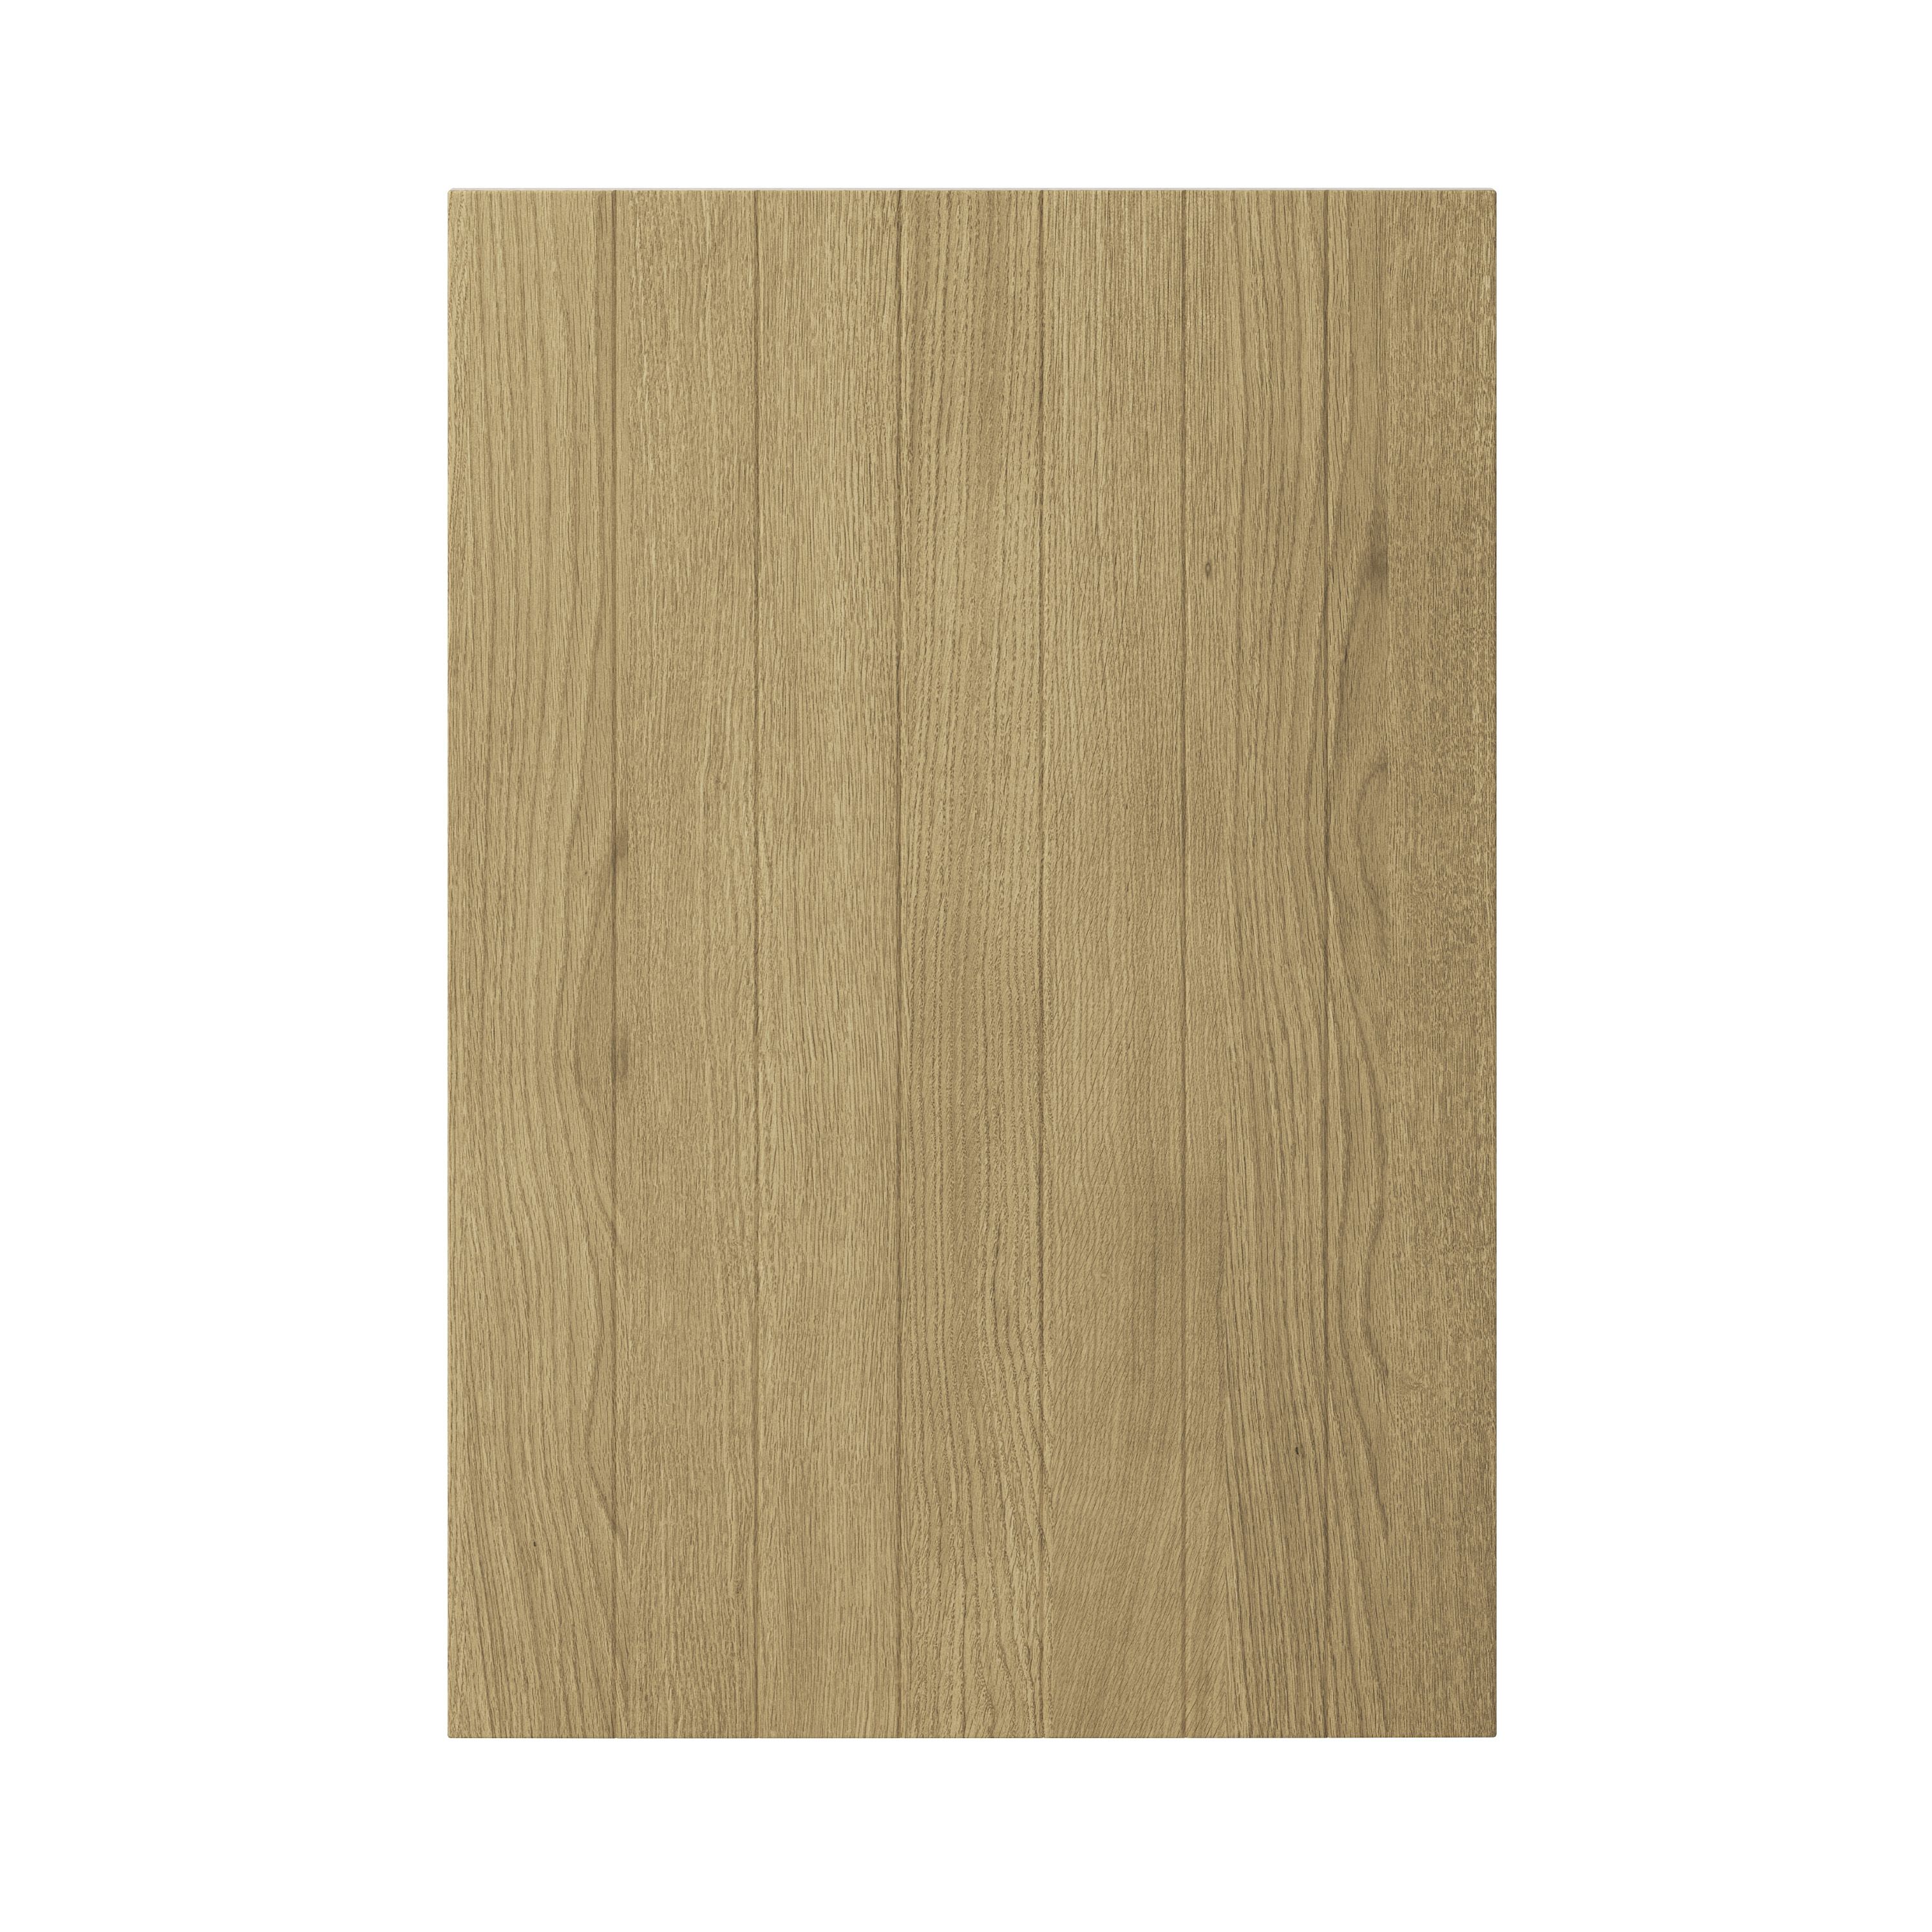 GoodHome Verbena Natural oak shaker Standard Base End support panel (H)870mm (W)590mm